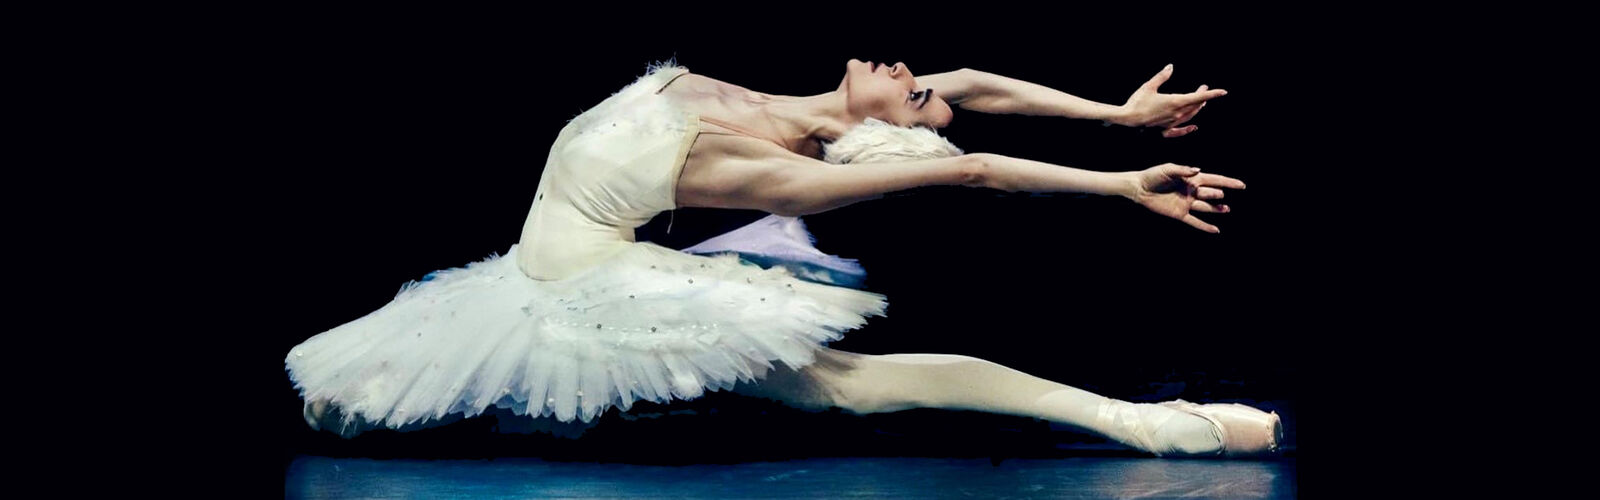 Ballett ohne Grenzen - 03. Februar 2023